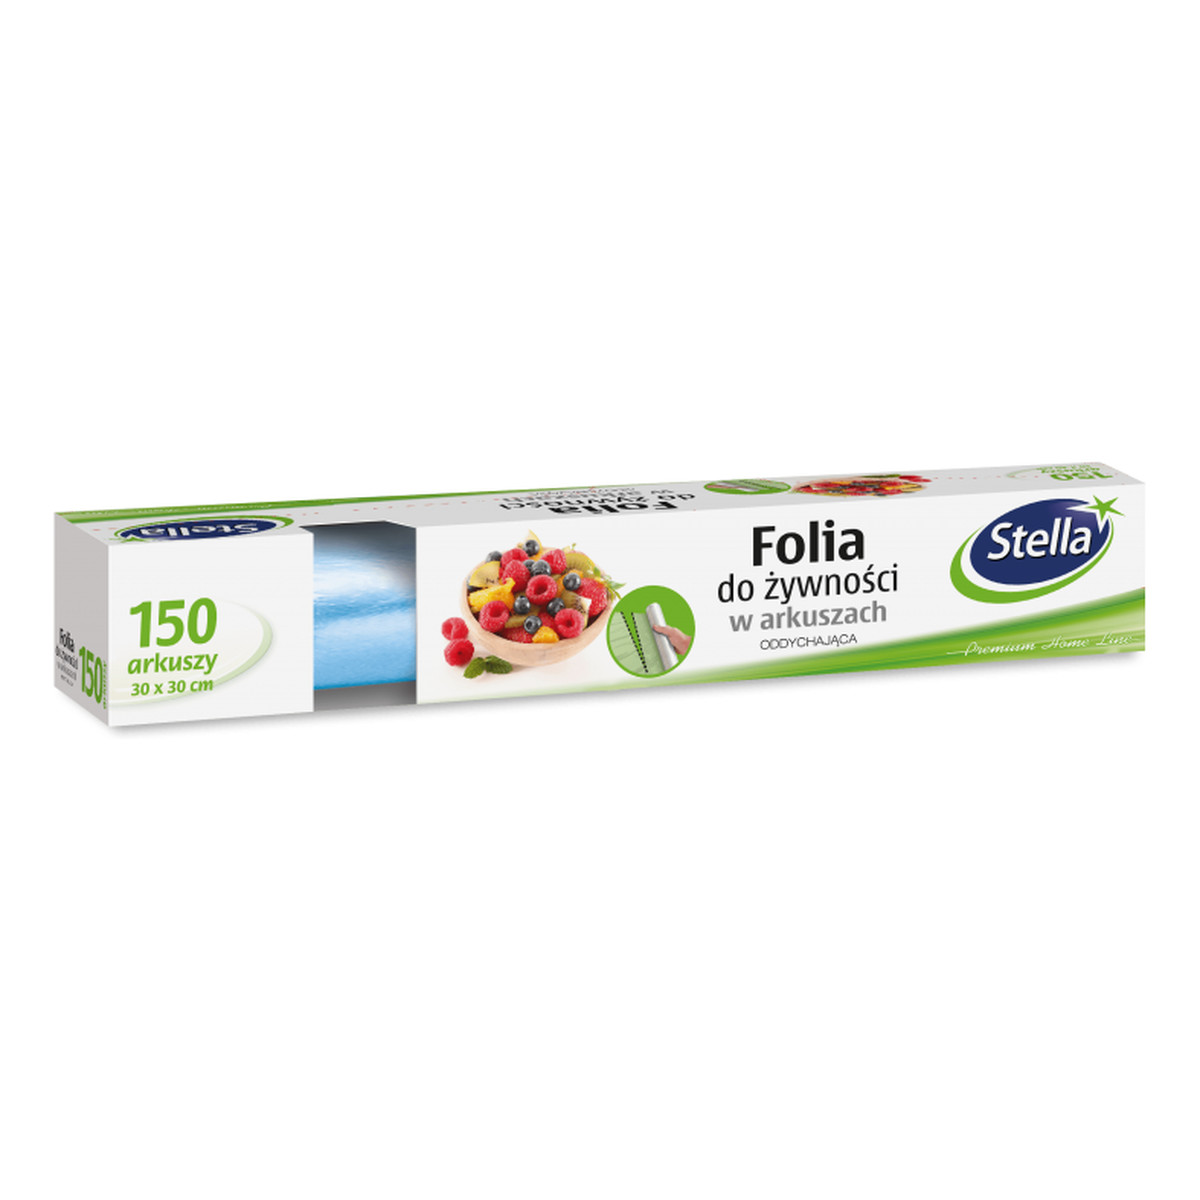 Stella Folia do żywności w arkuszach oddychająca -150 arkuszy